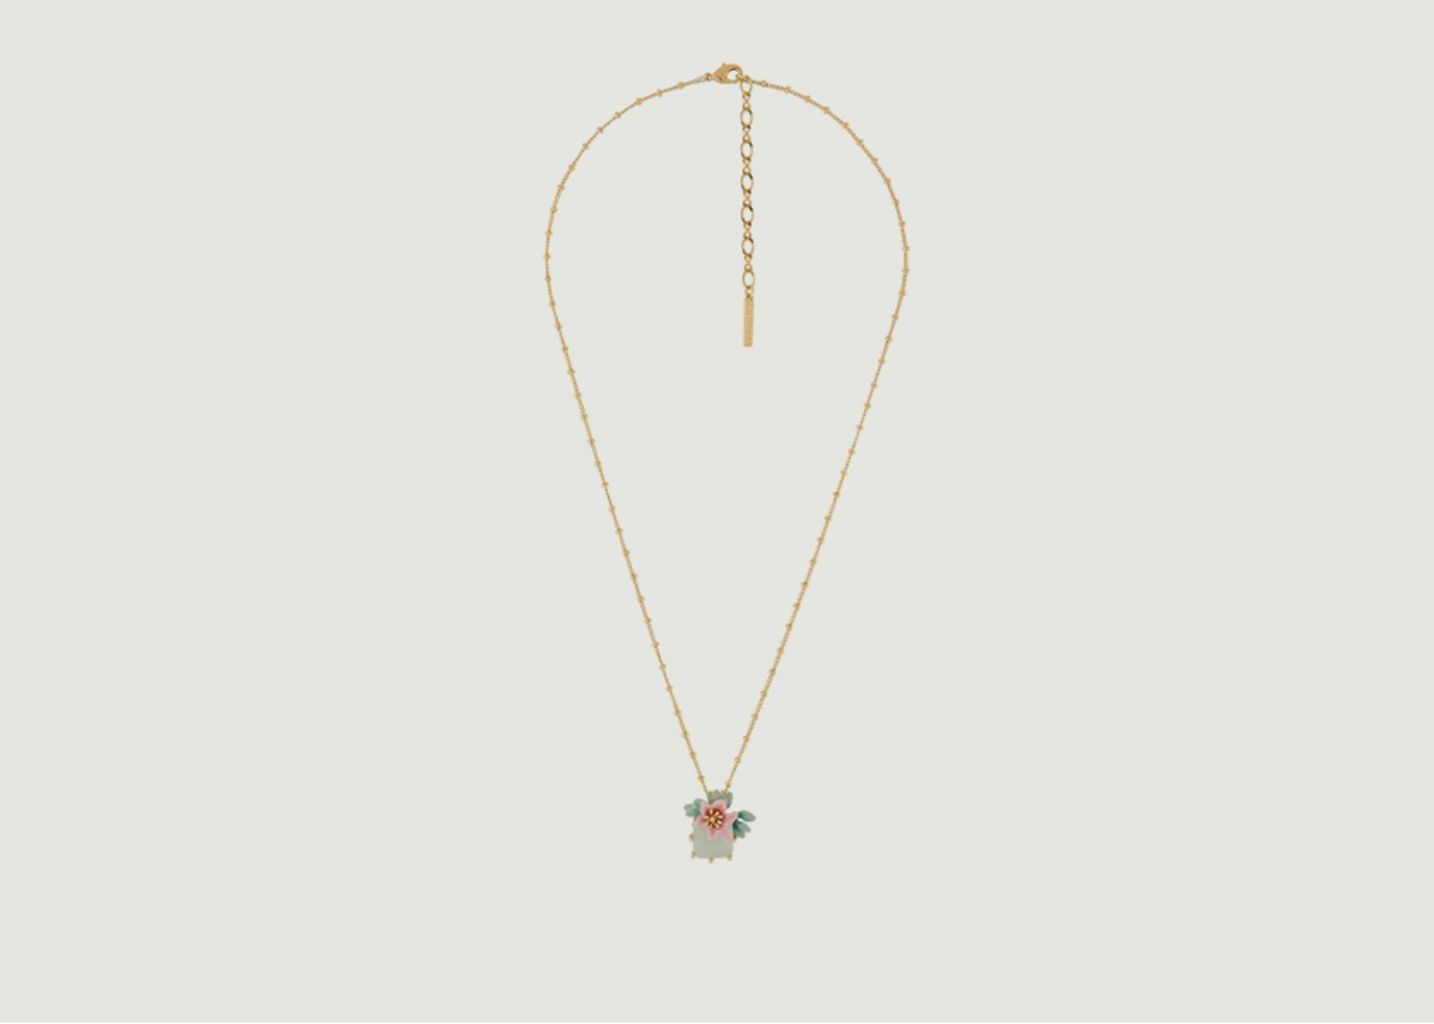 Lemon flower necklace with square stone - Les Néréides